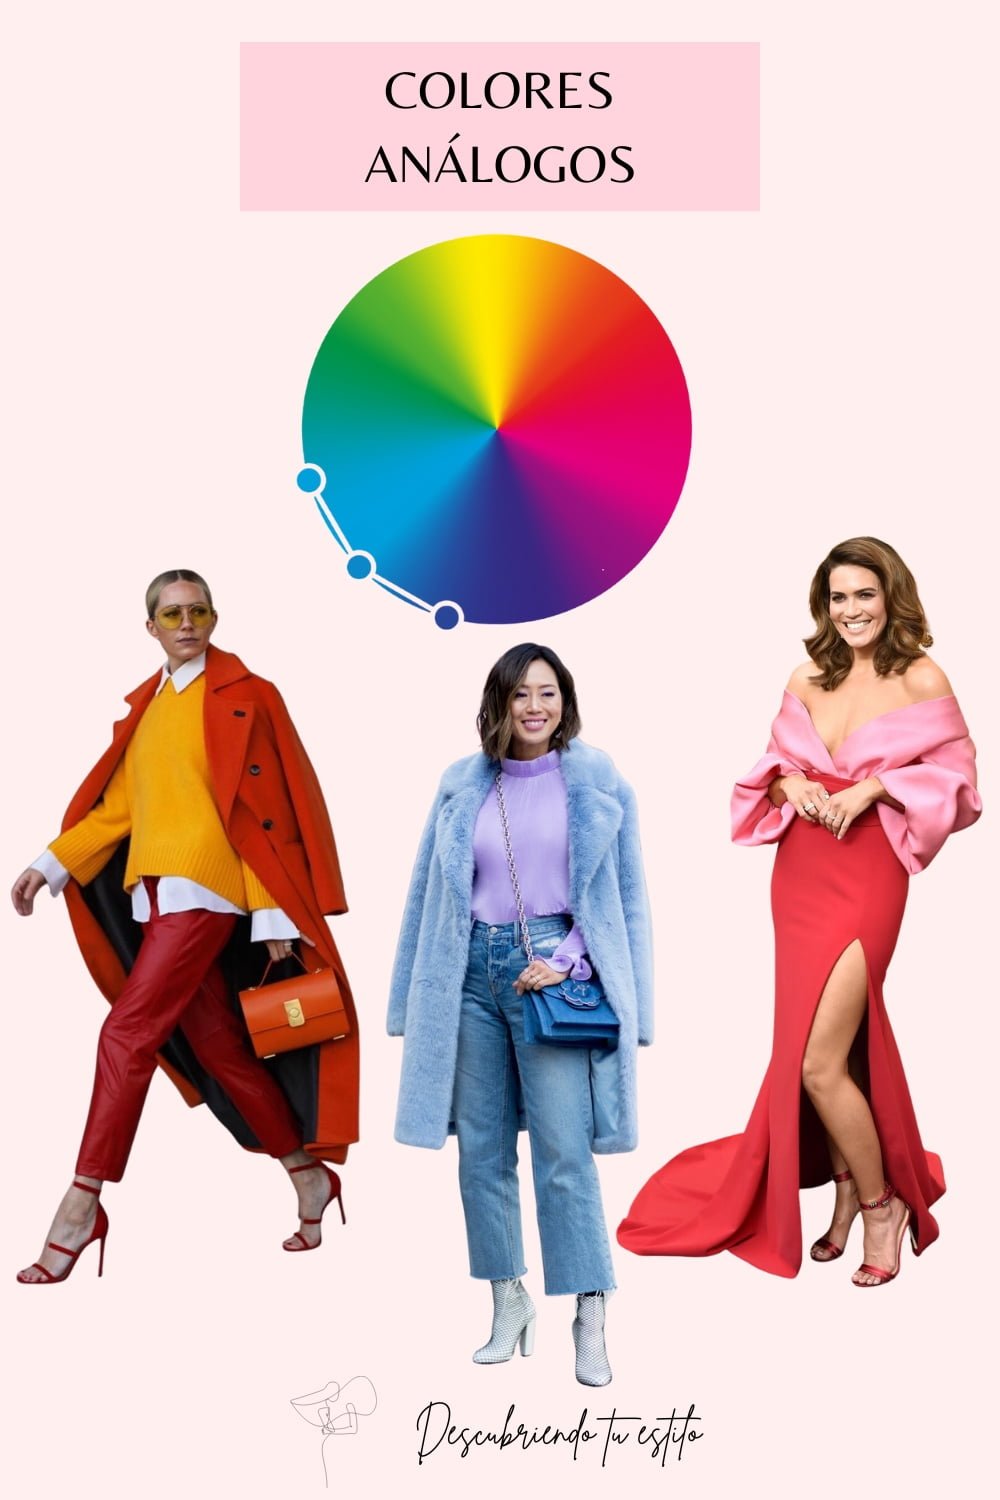 Combinar colores de ropa - Analogos de colores